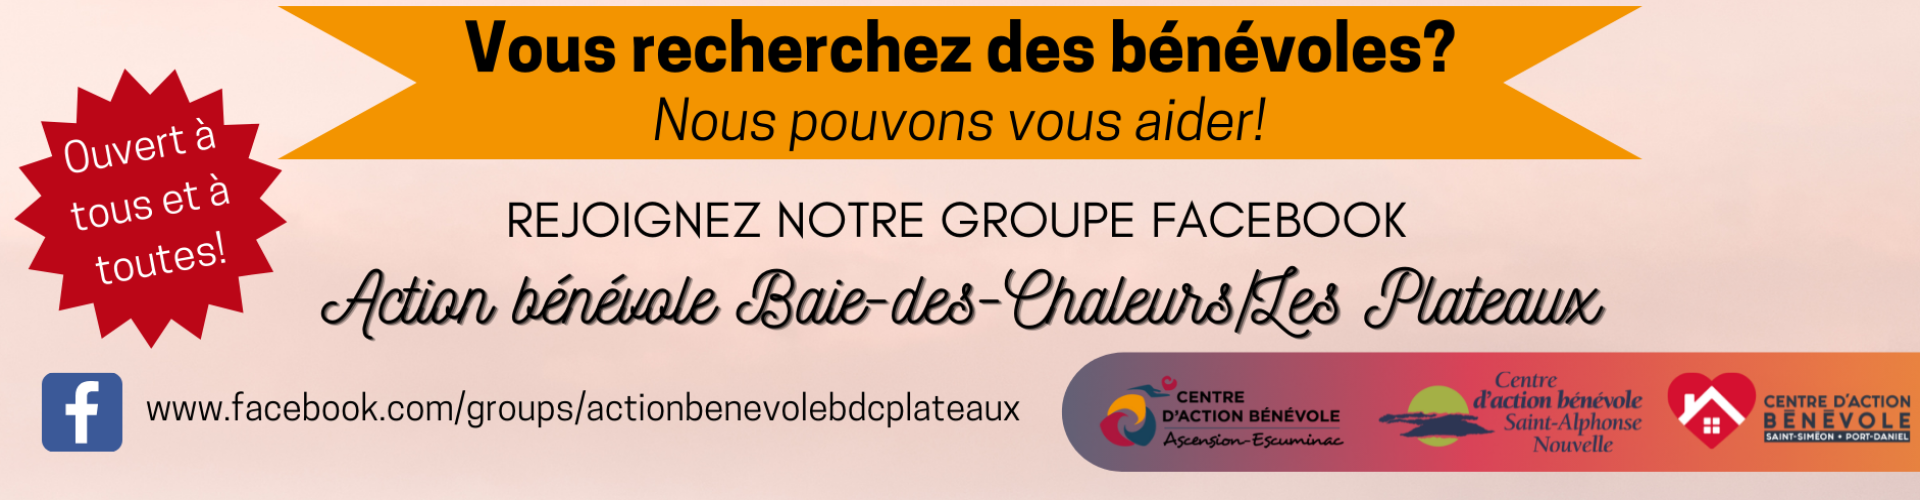 Groupe Facebook Action bénévole Baie-des-Chaleurs/Les Plateaux